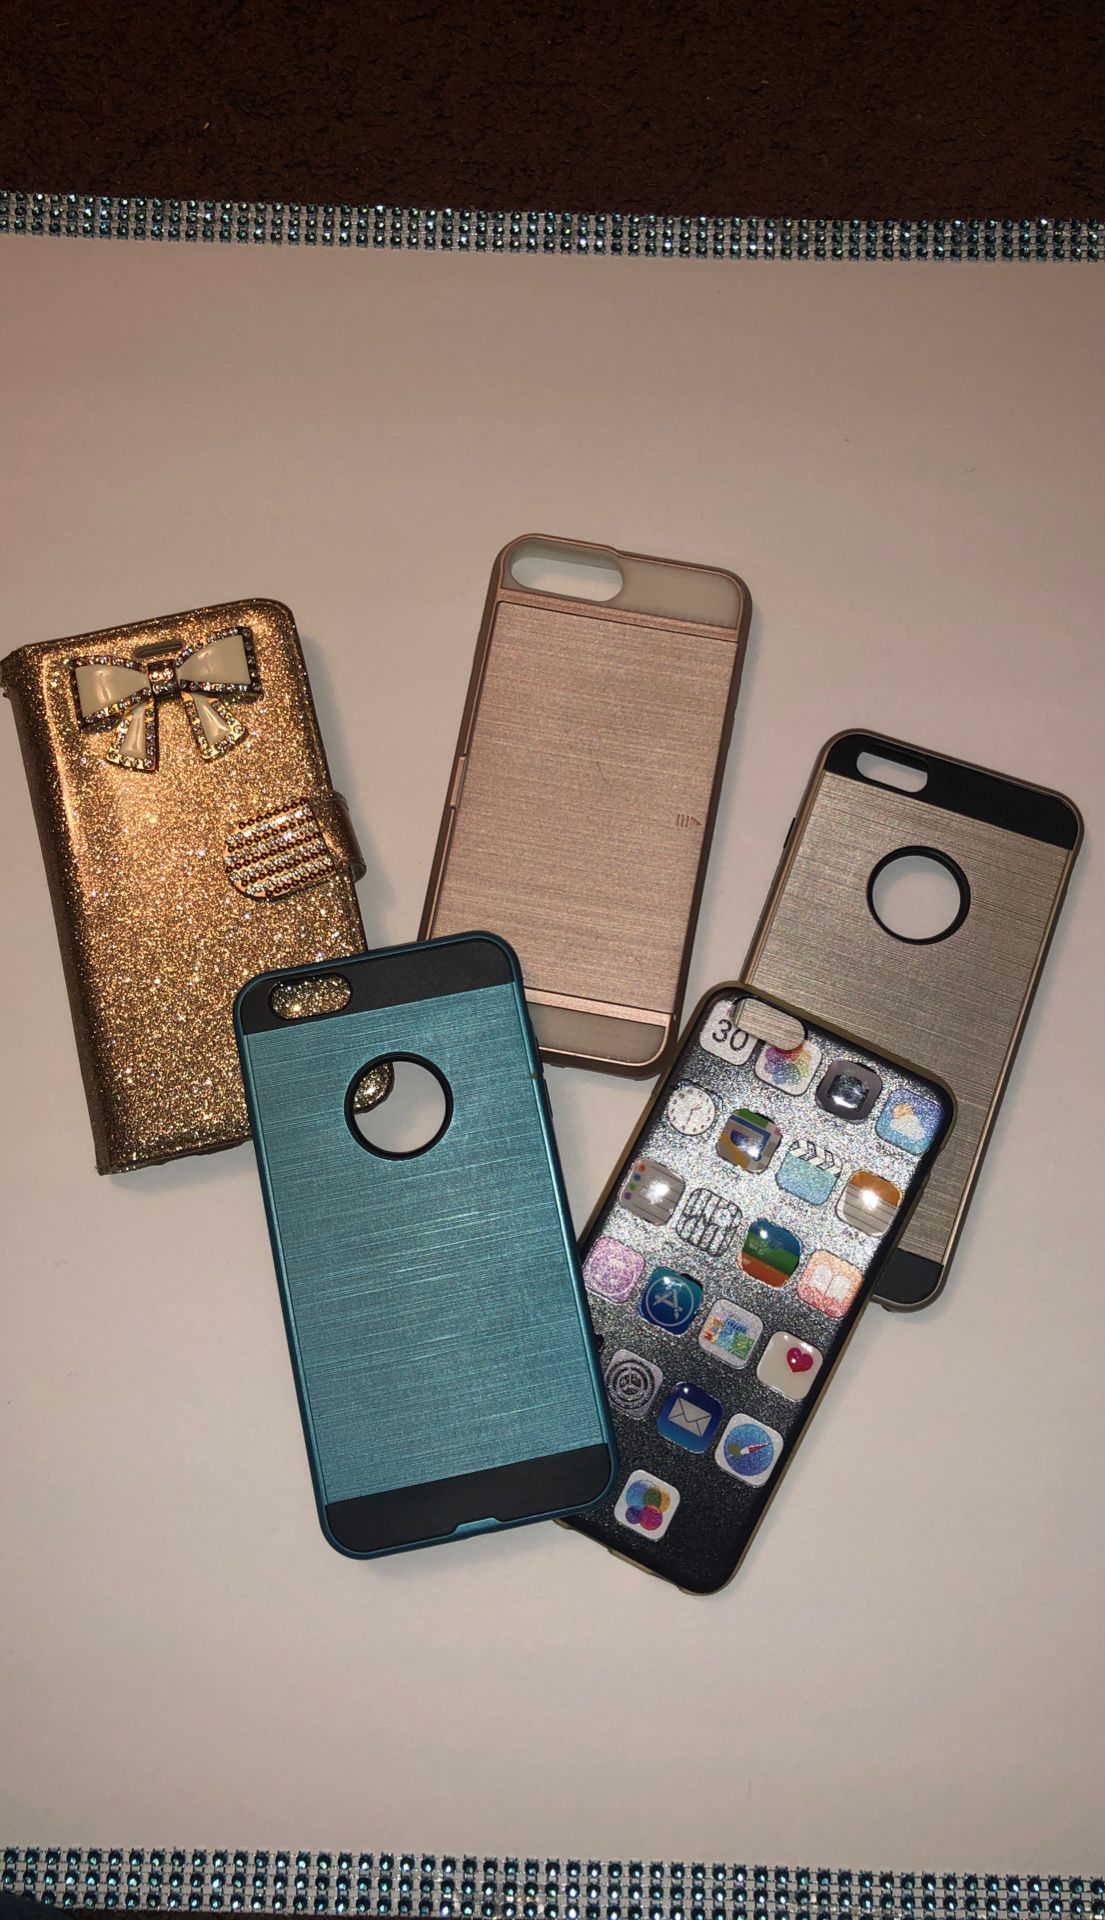 iPhone 6 Plus one cases